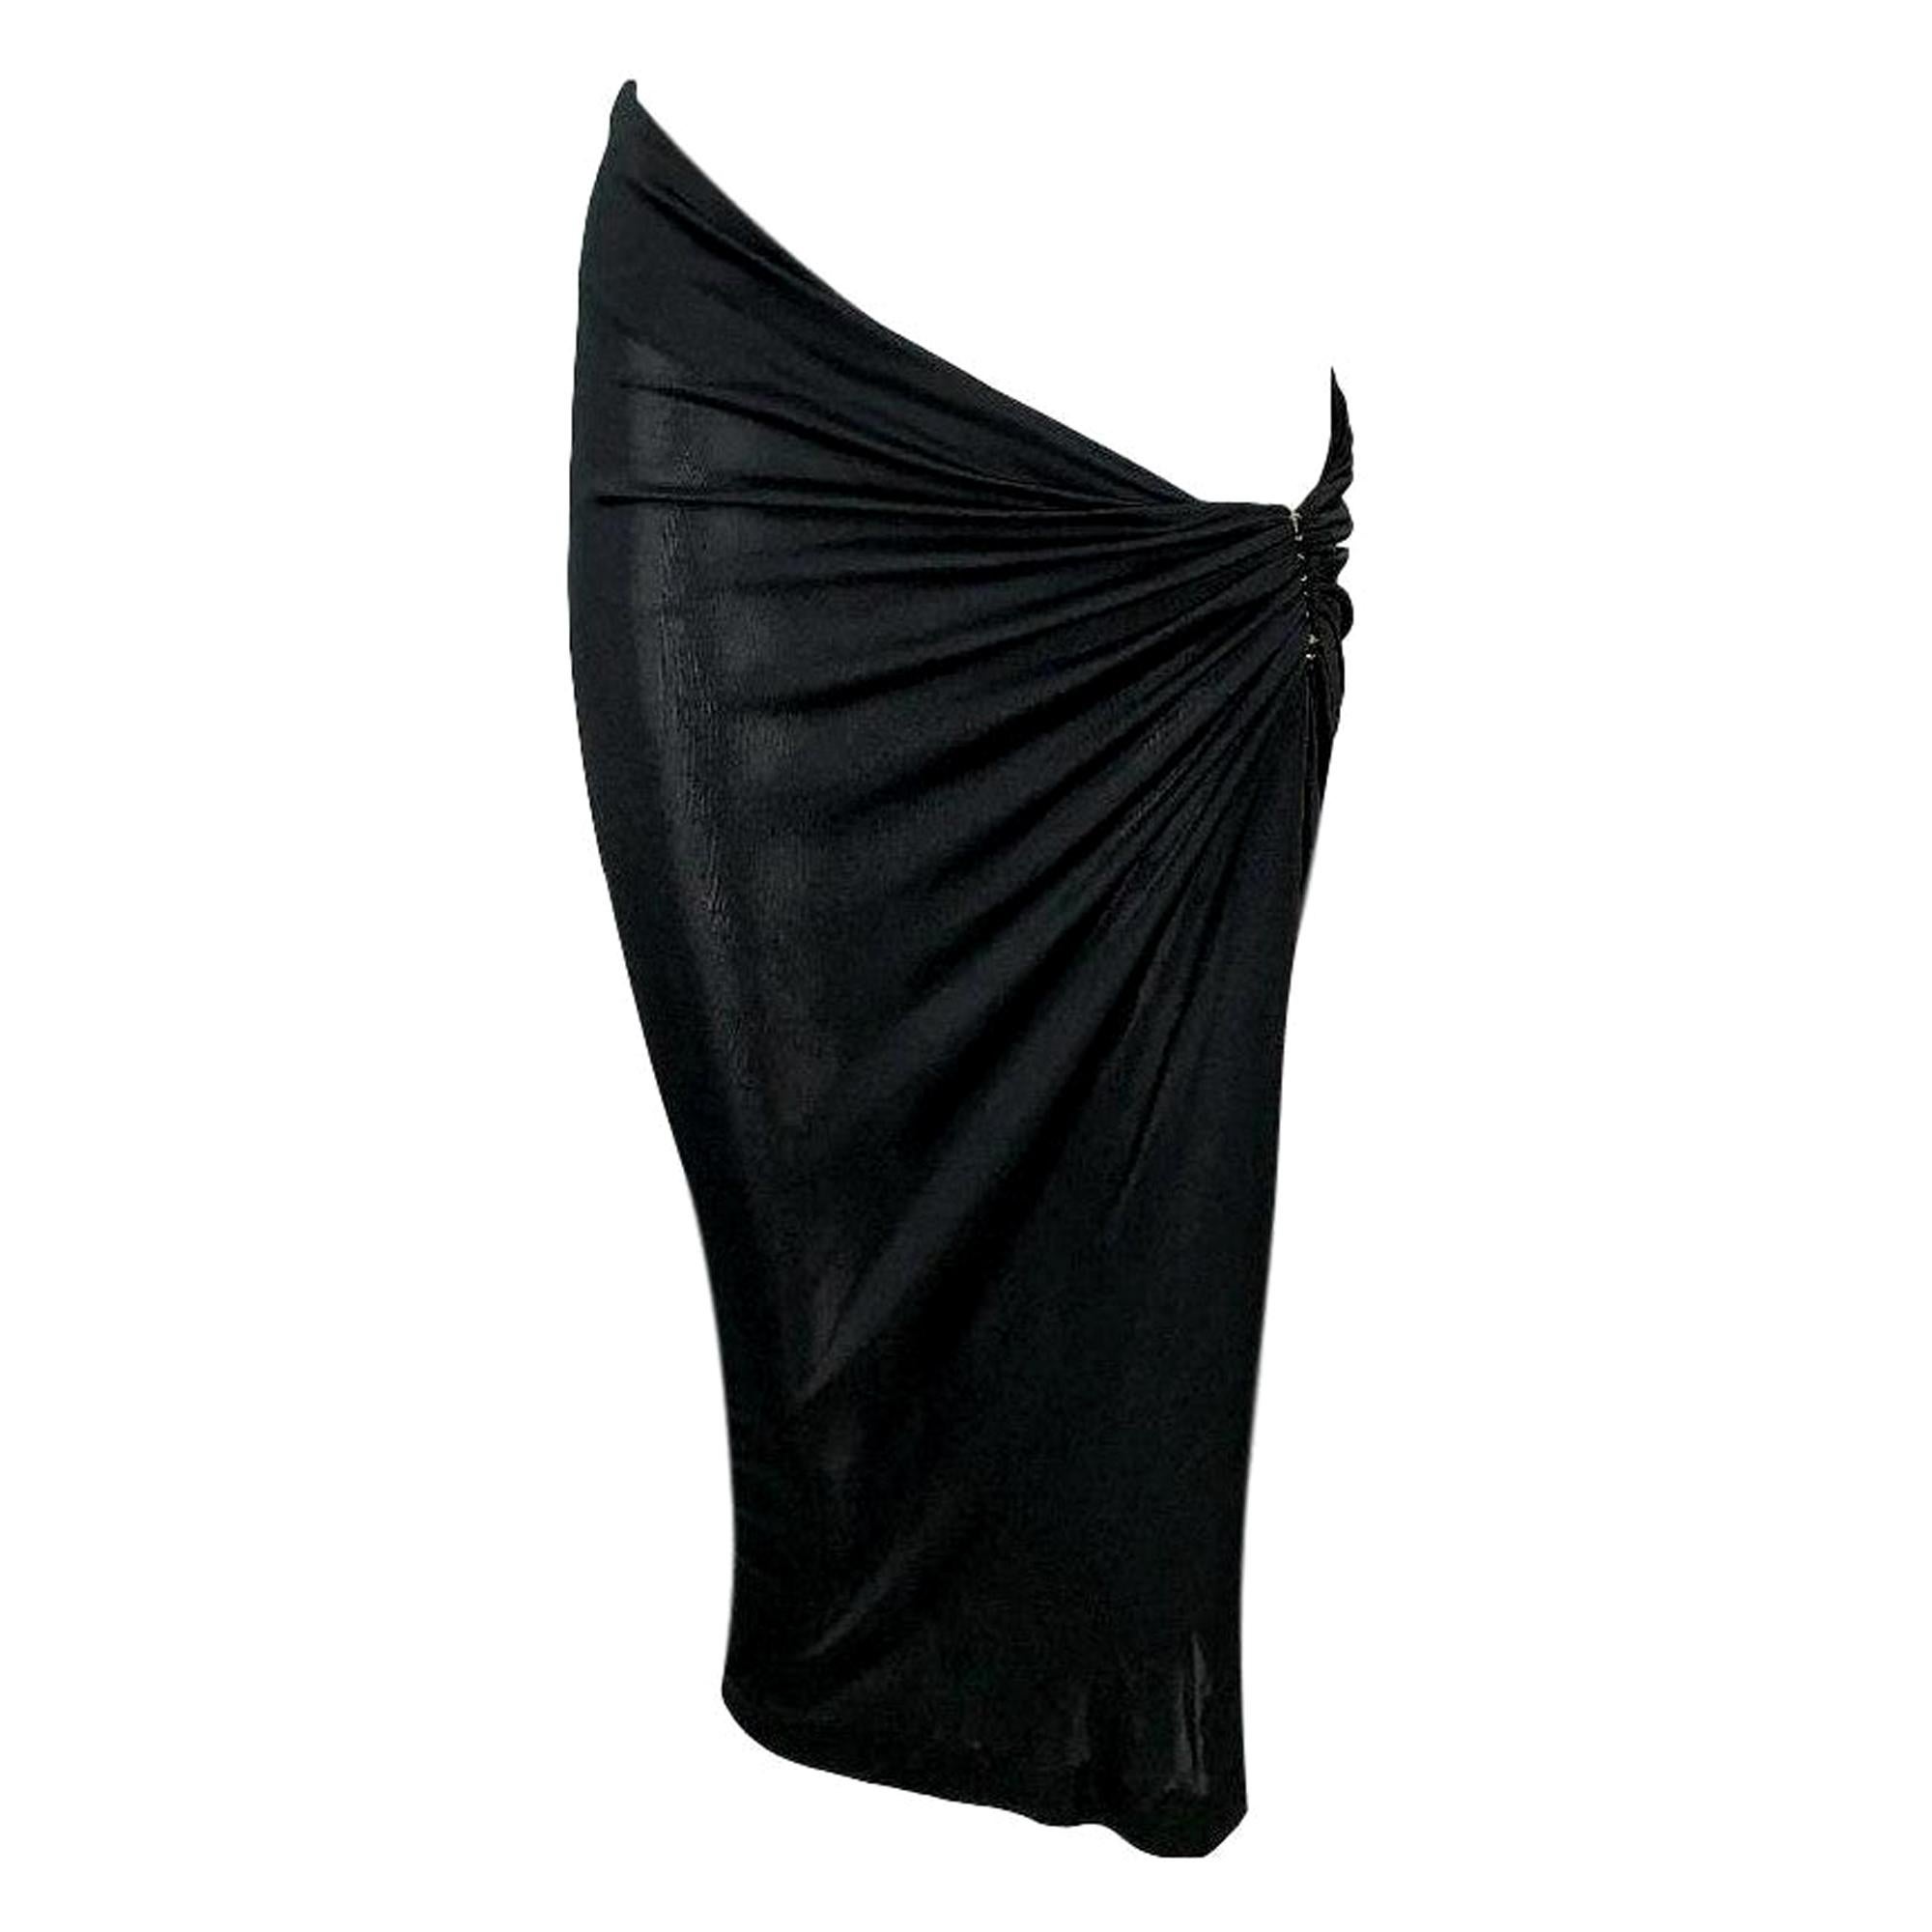 C 2001 Yves Saint Laurent Tom Ford Sheer Black Ultra Low Rise Asymmetrical Skirt